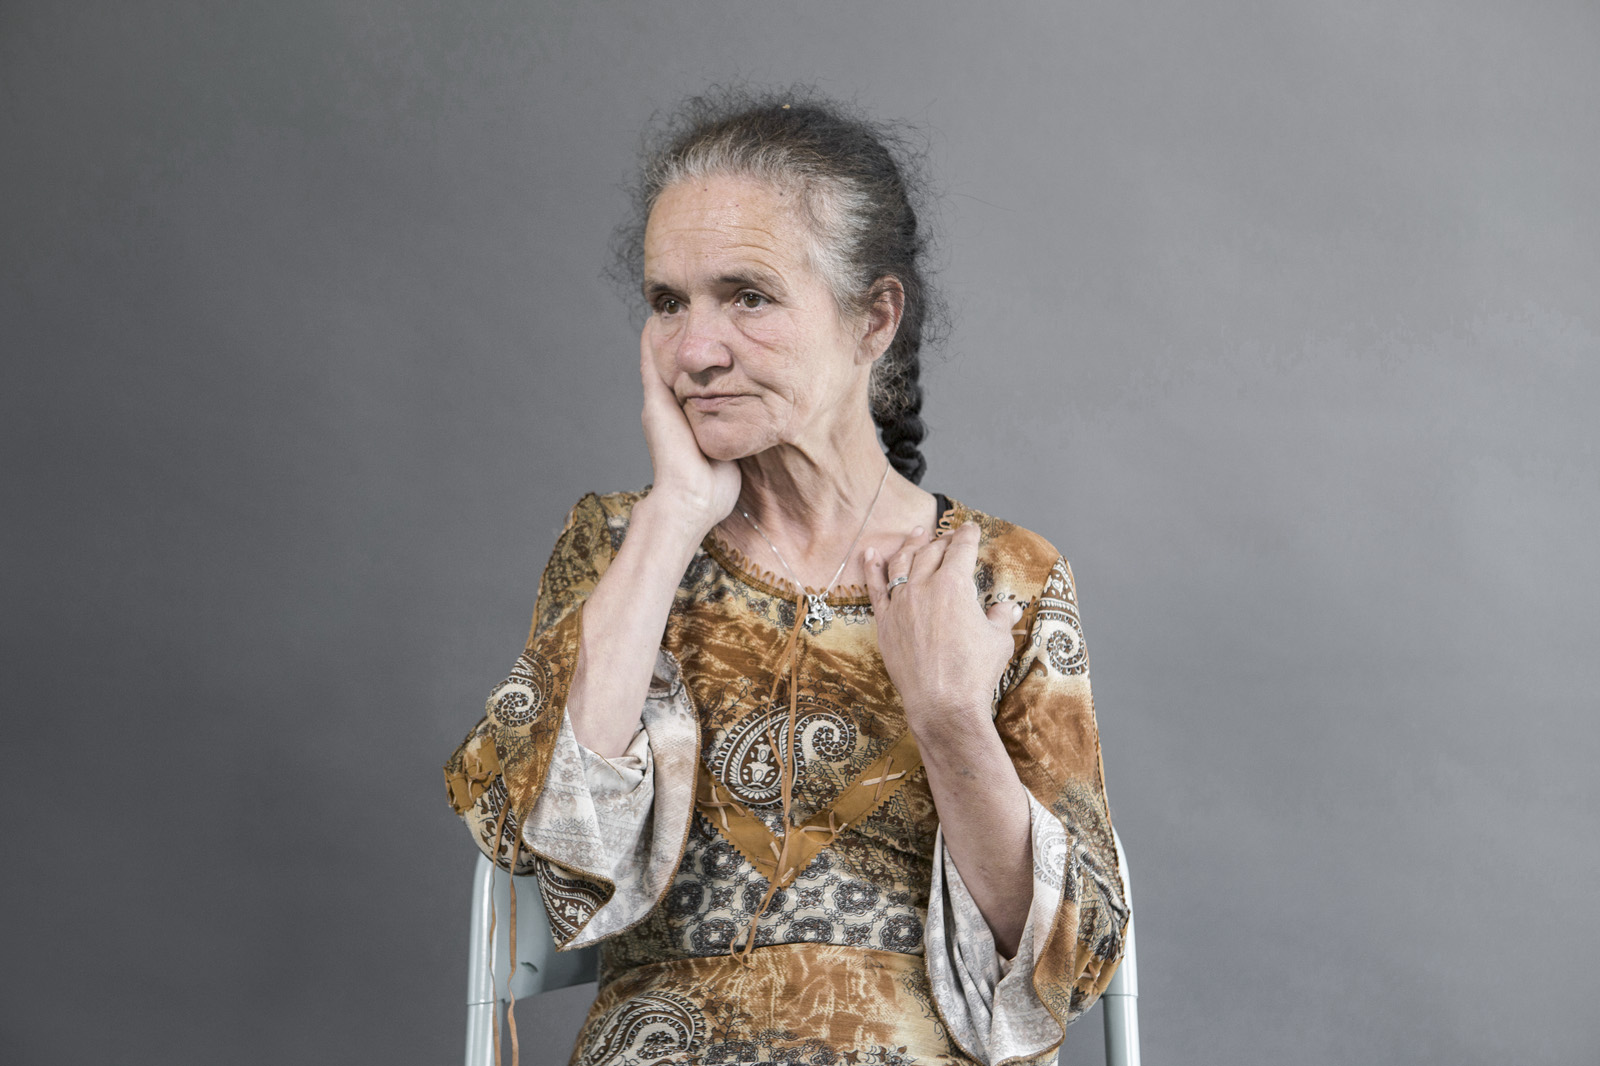 HAJDU MARIA-IREN, 55